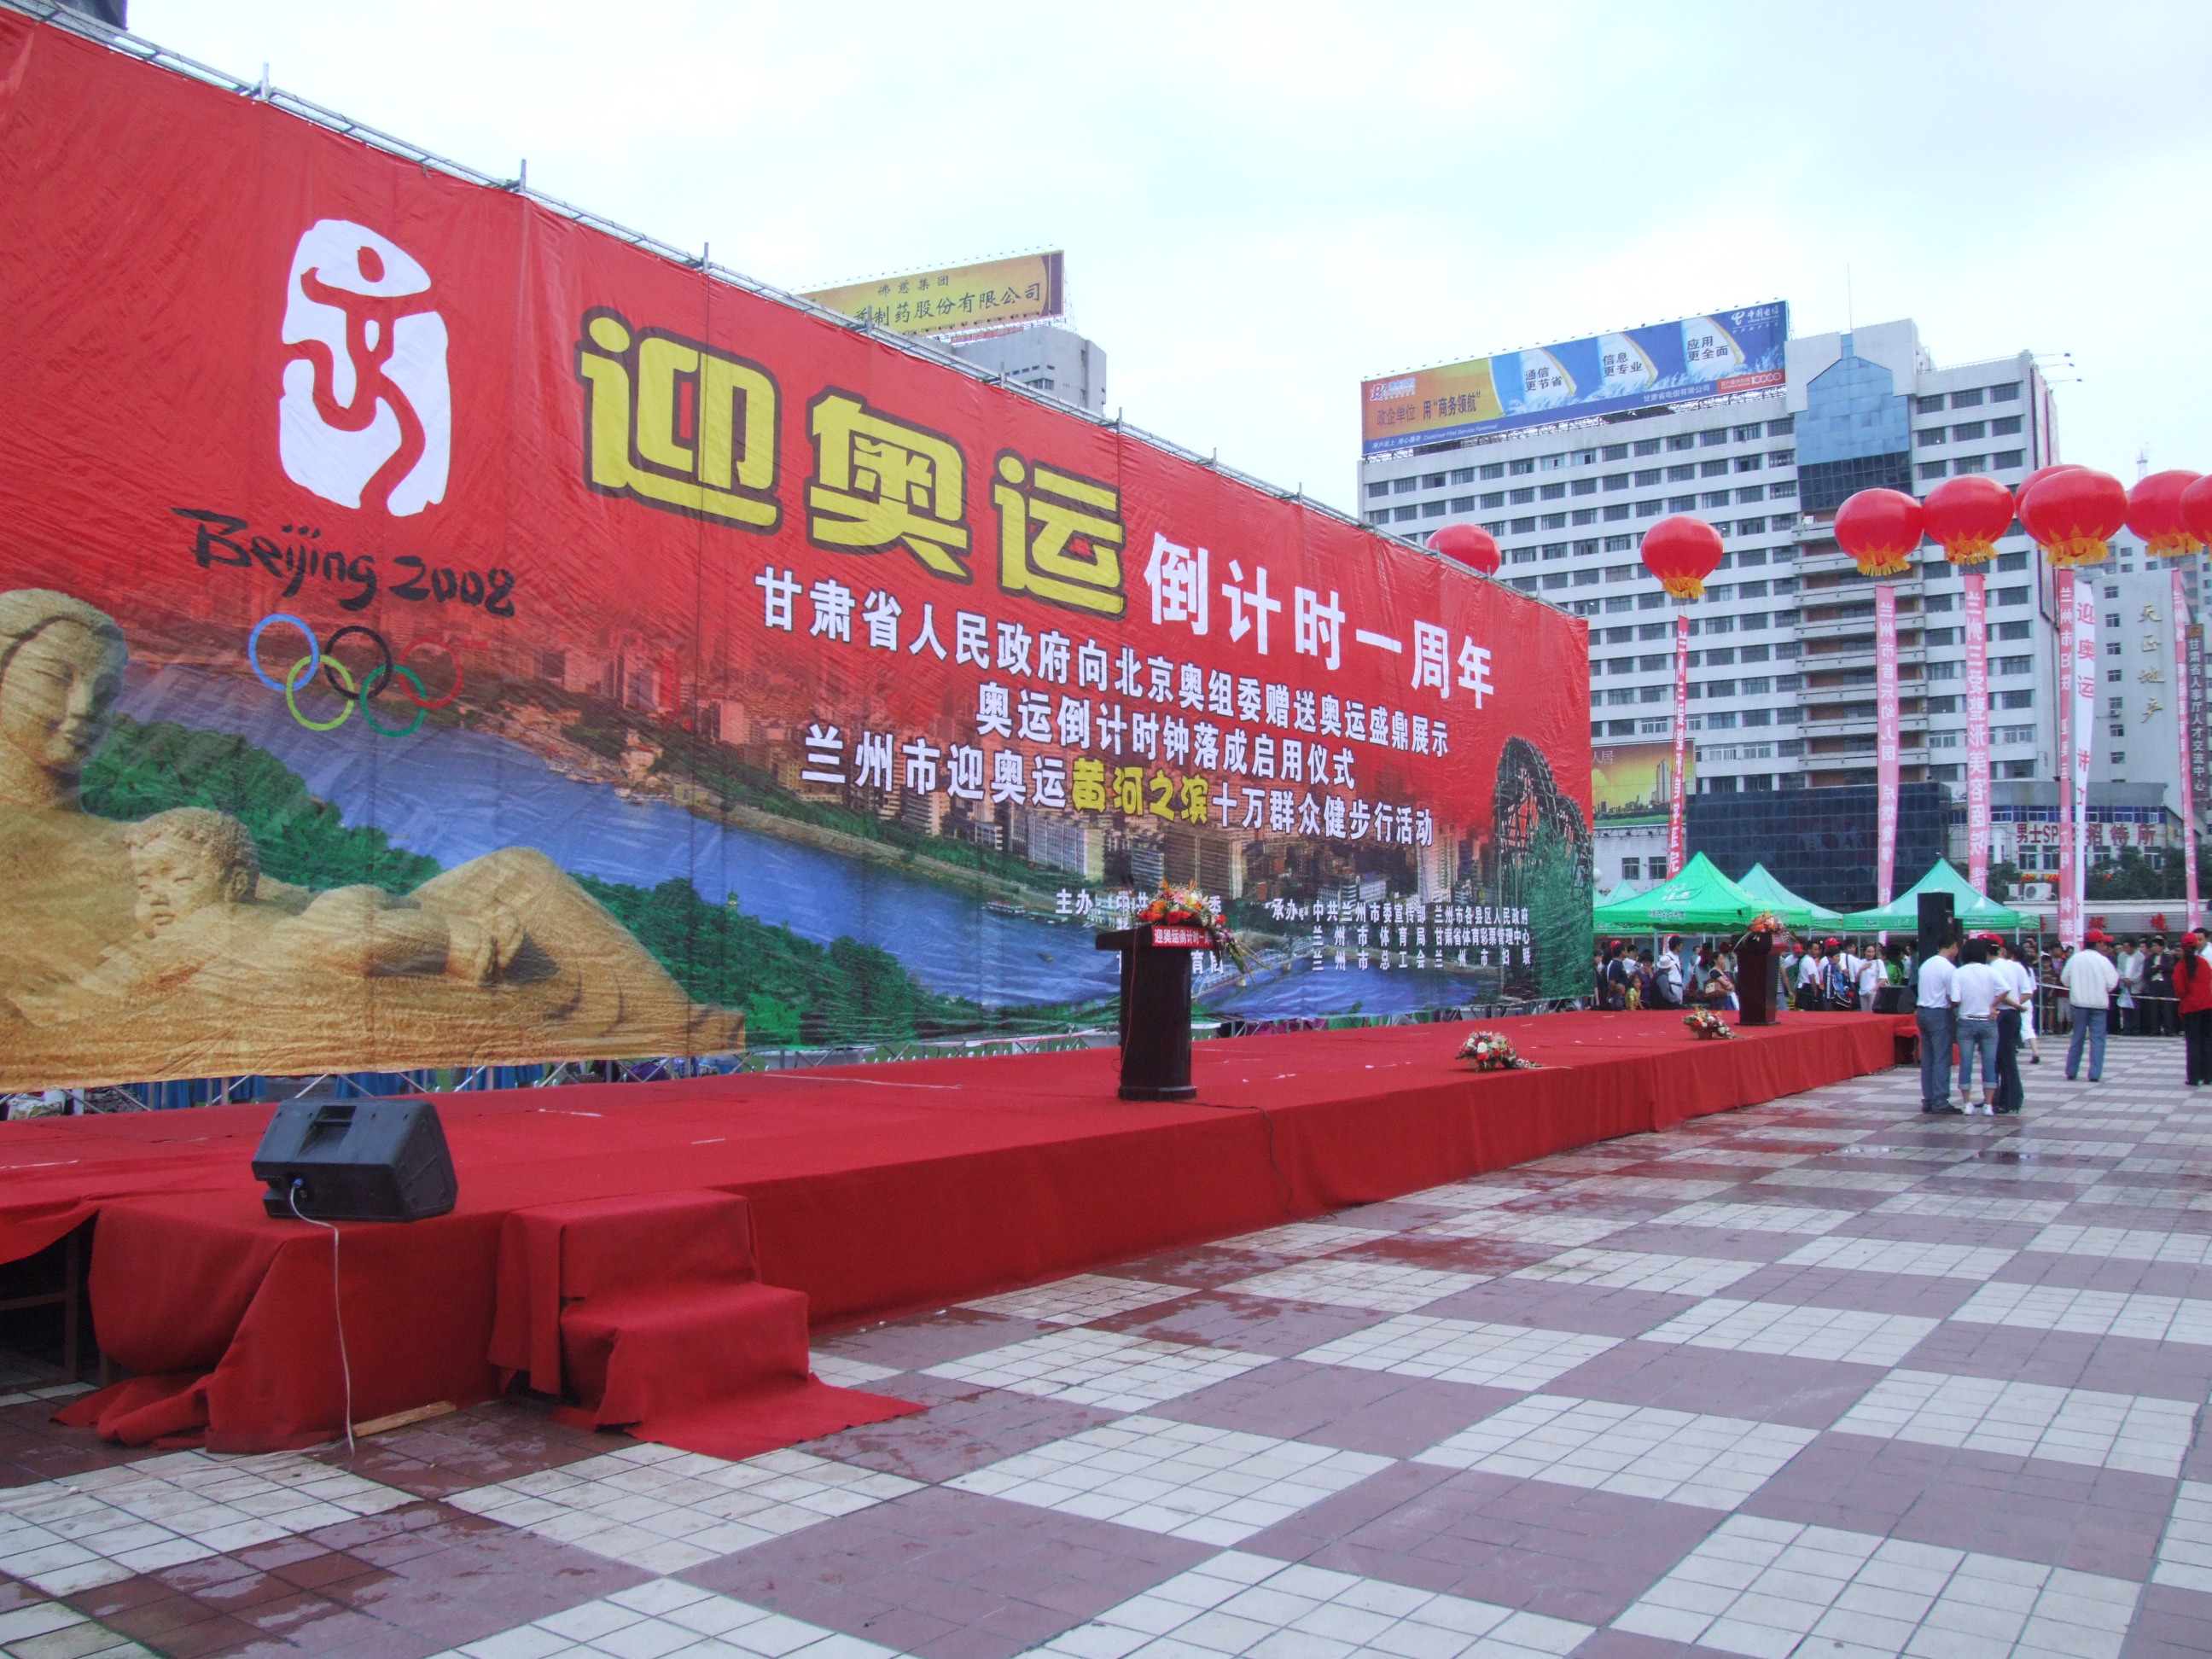 甘肅省人民政府向北京奧組委贈送奧運盛鼎展示奧運倒計時啟用儀式